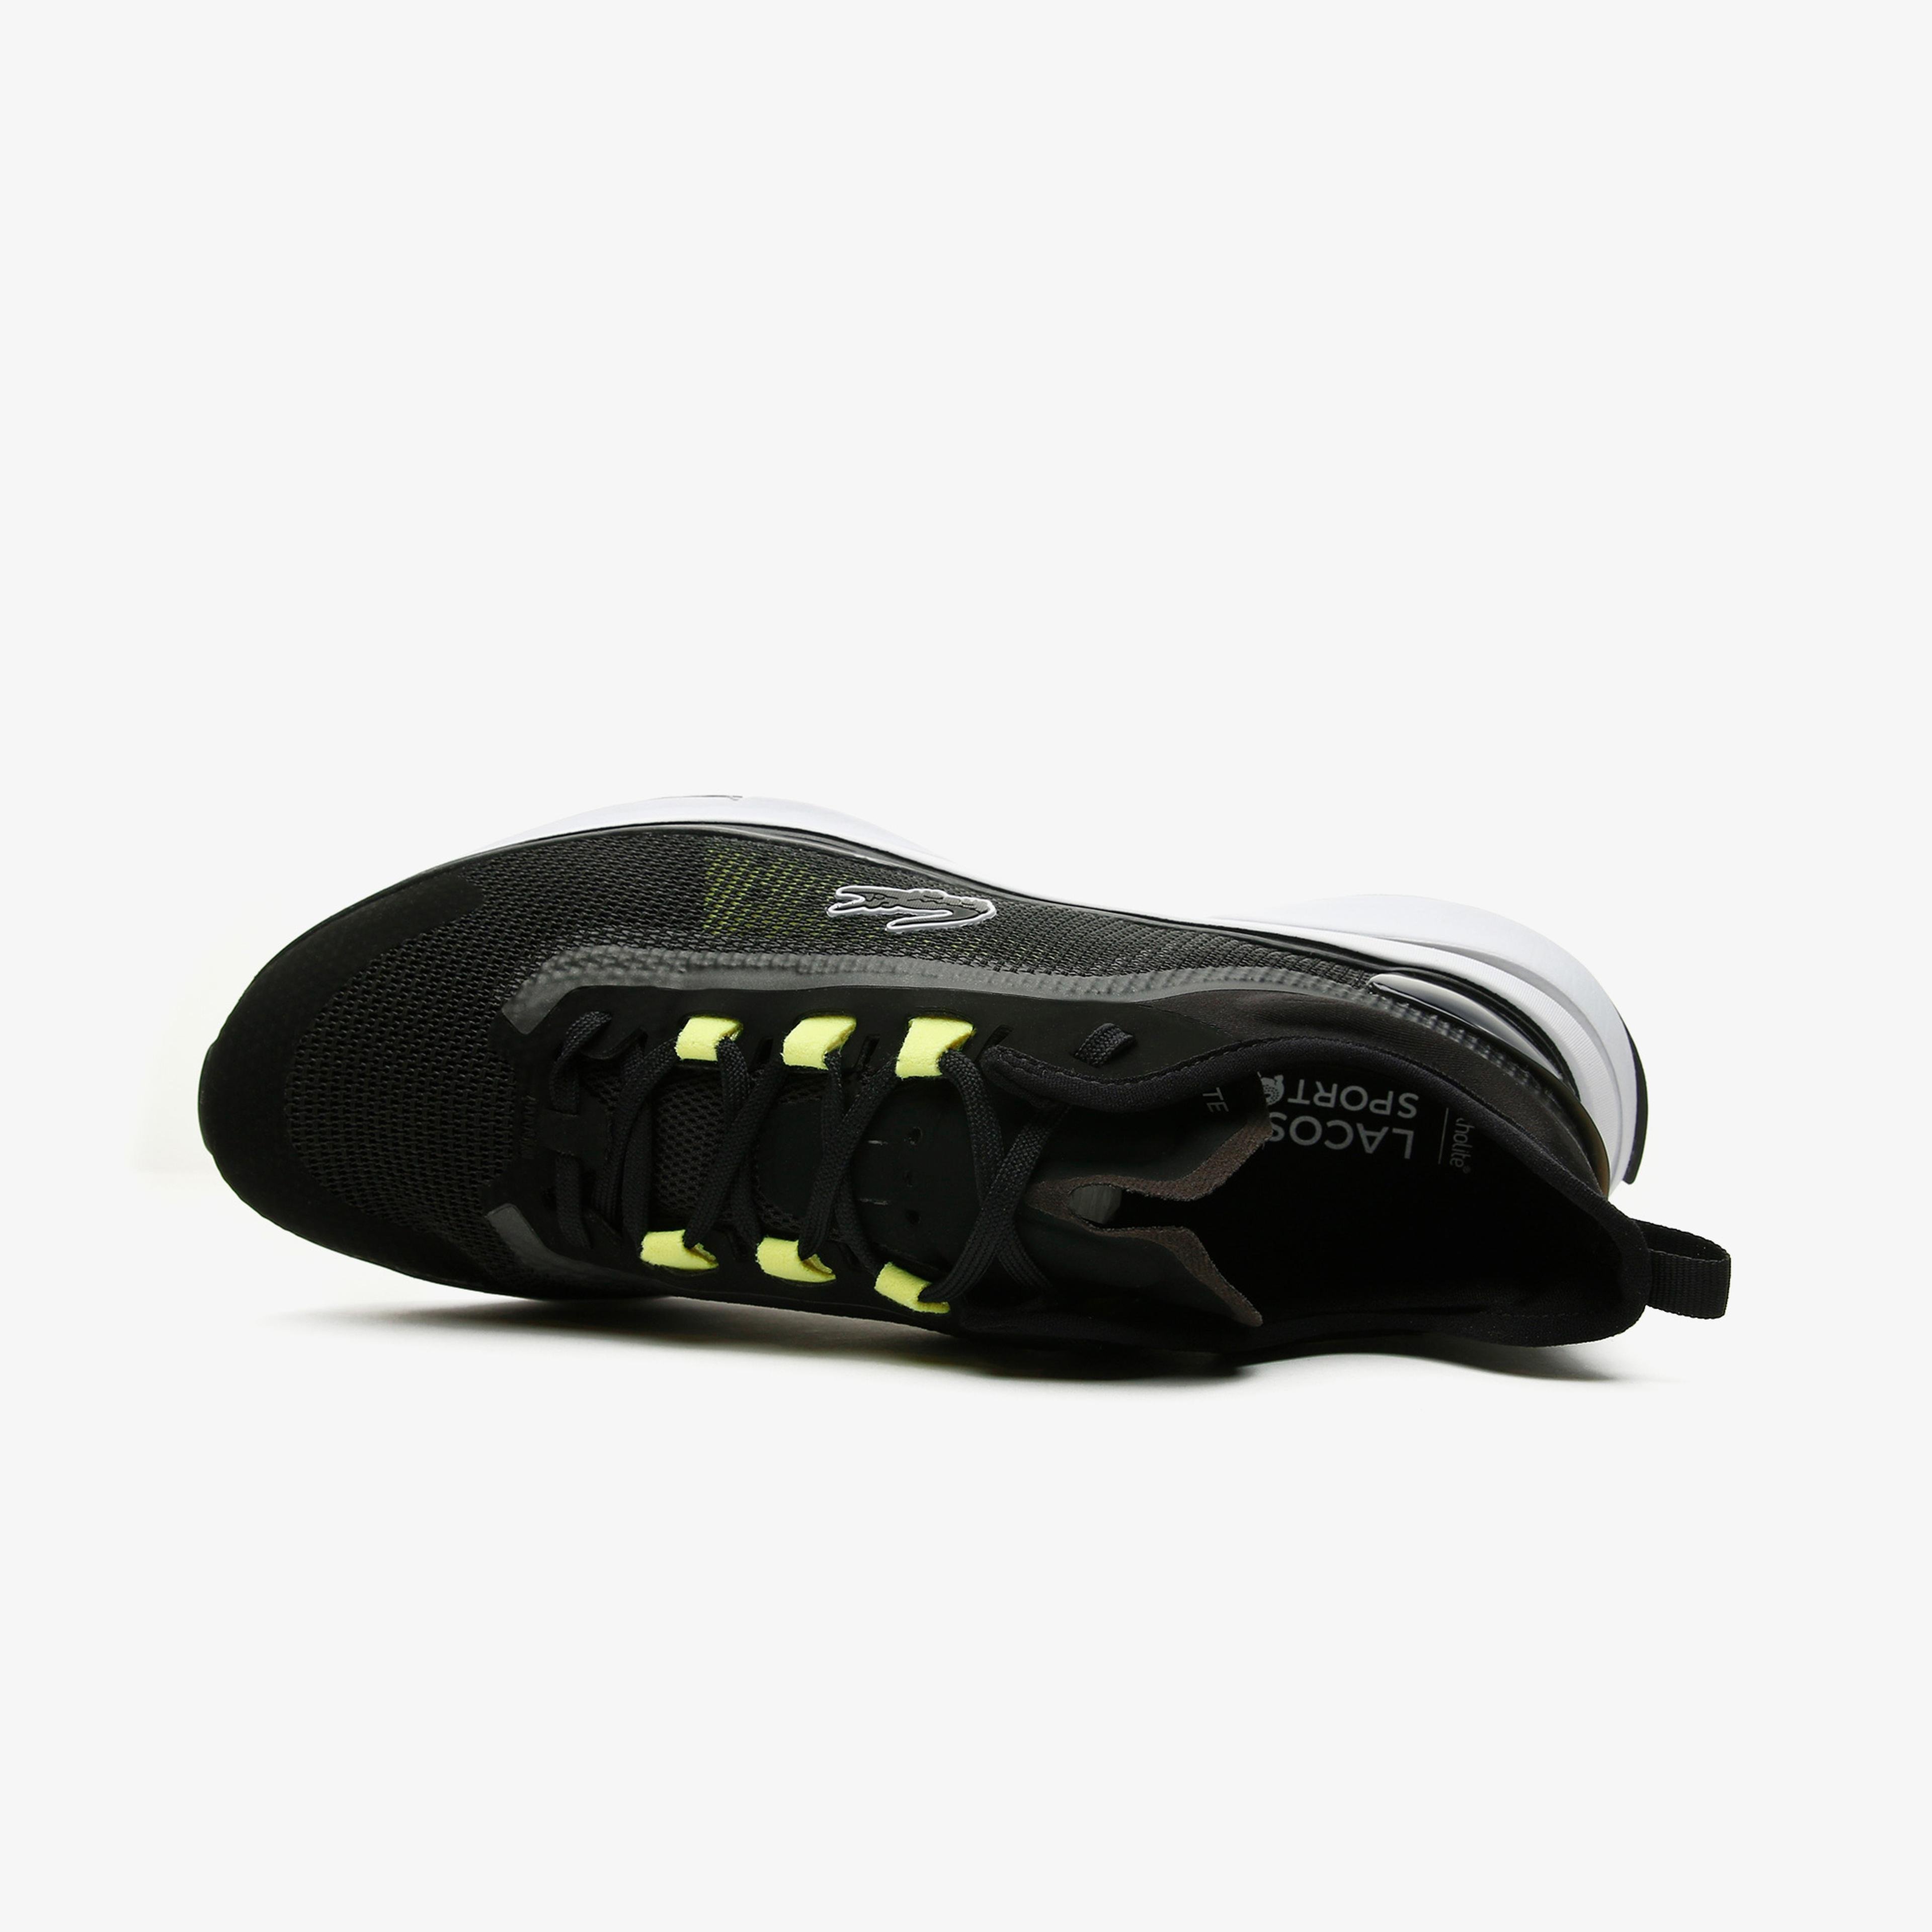 Lacoste Run Spin Ultra 0921 1 Sma Erkek Siyah - Sarı Spor Ayakkabı